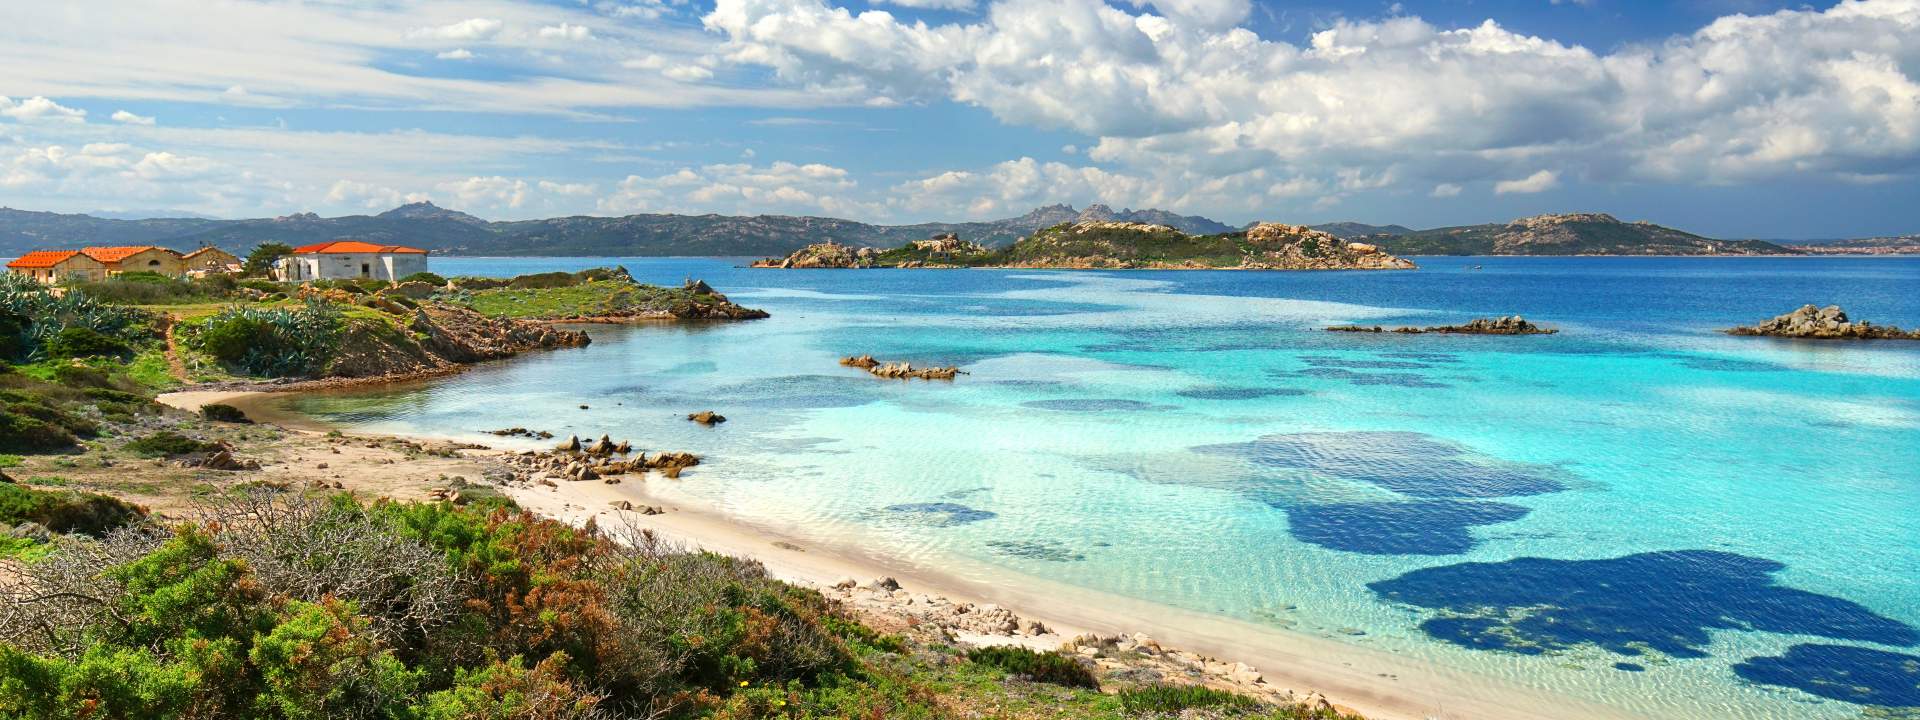 Una crociera esclusiva tra le più belle isole della Sardegna e della Corsica